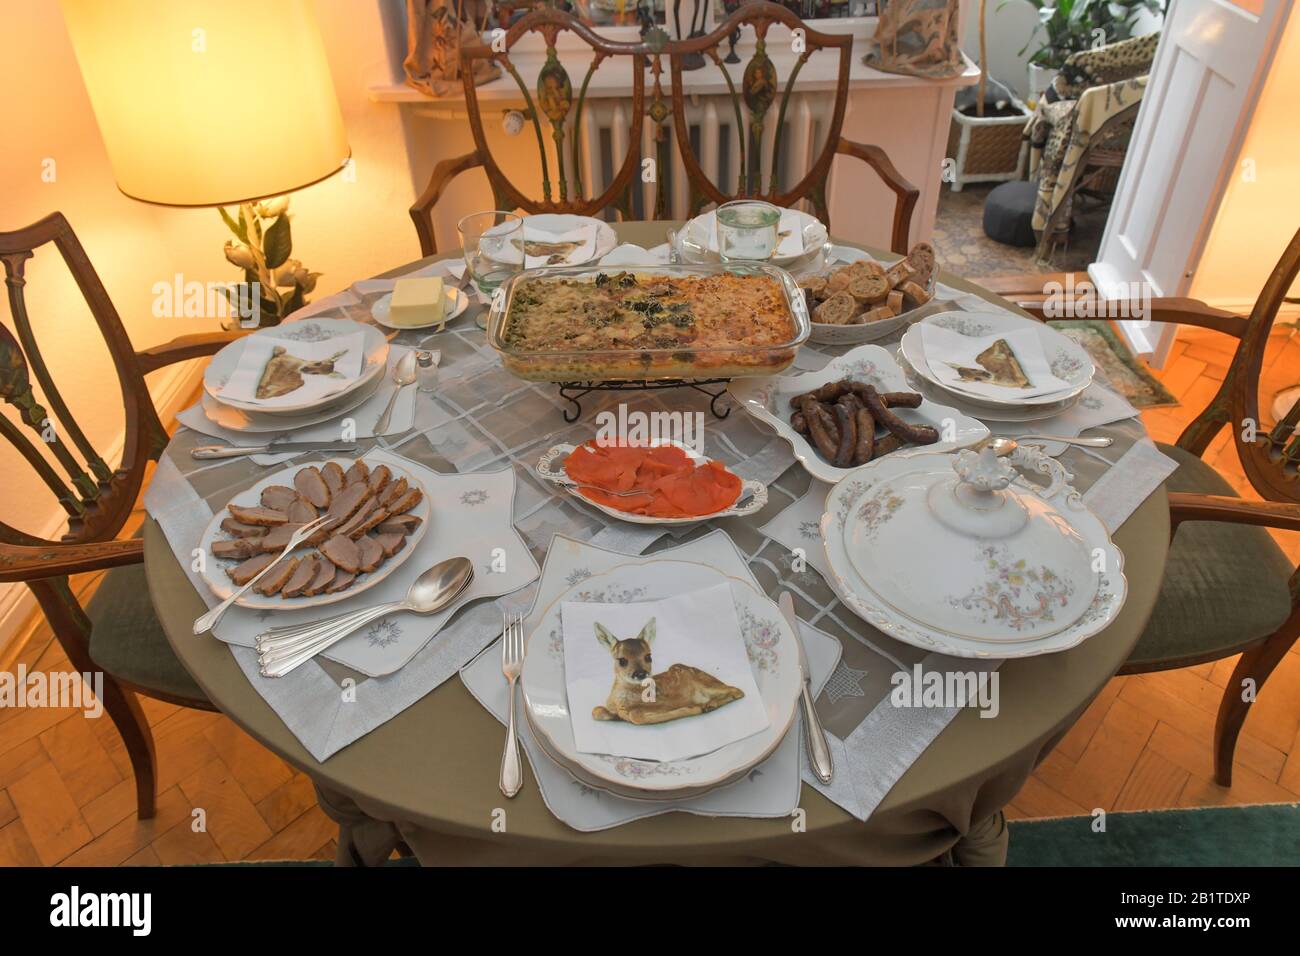 Gedeckter Tisch mit Essen, Auflauf, Tischdecke, Teller, Porzellan Stock  Photo - Alamy